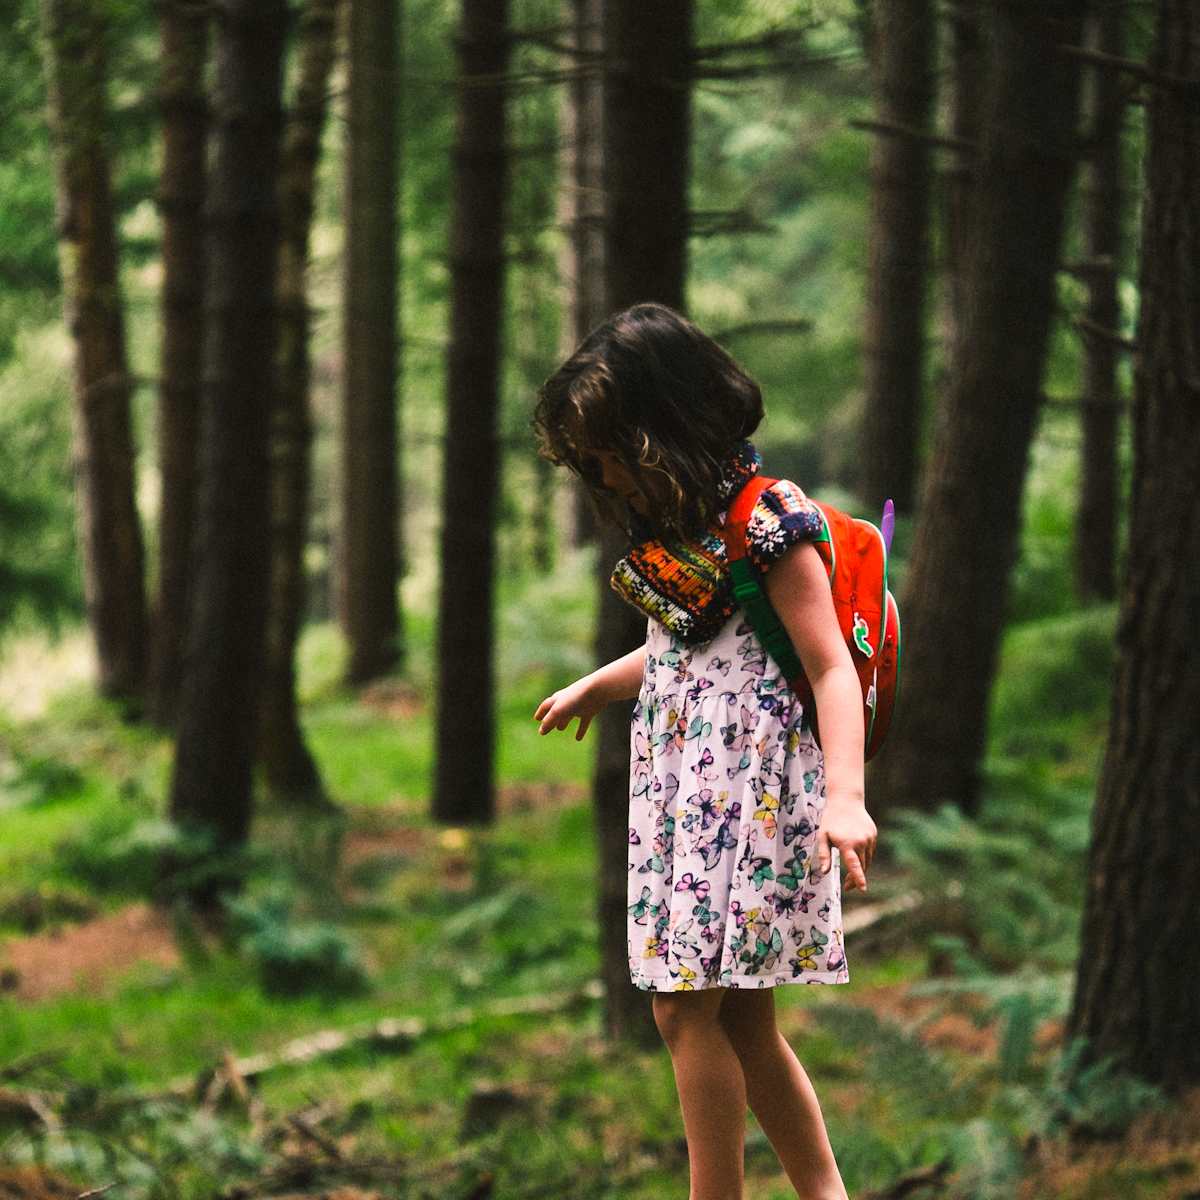 She is natural. Человек в лесу. Заблудиться. Девочка в лесу аукает. Одинокий человек летом в лесу.